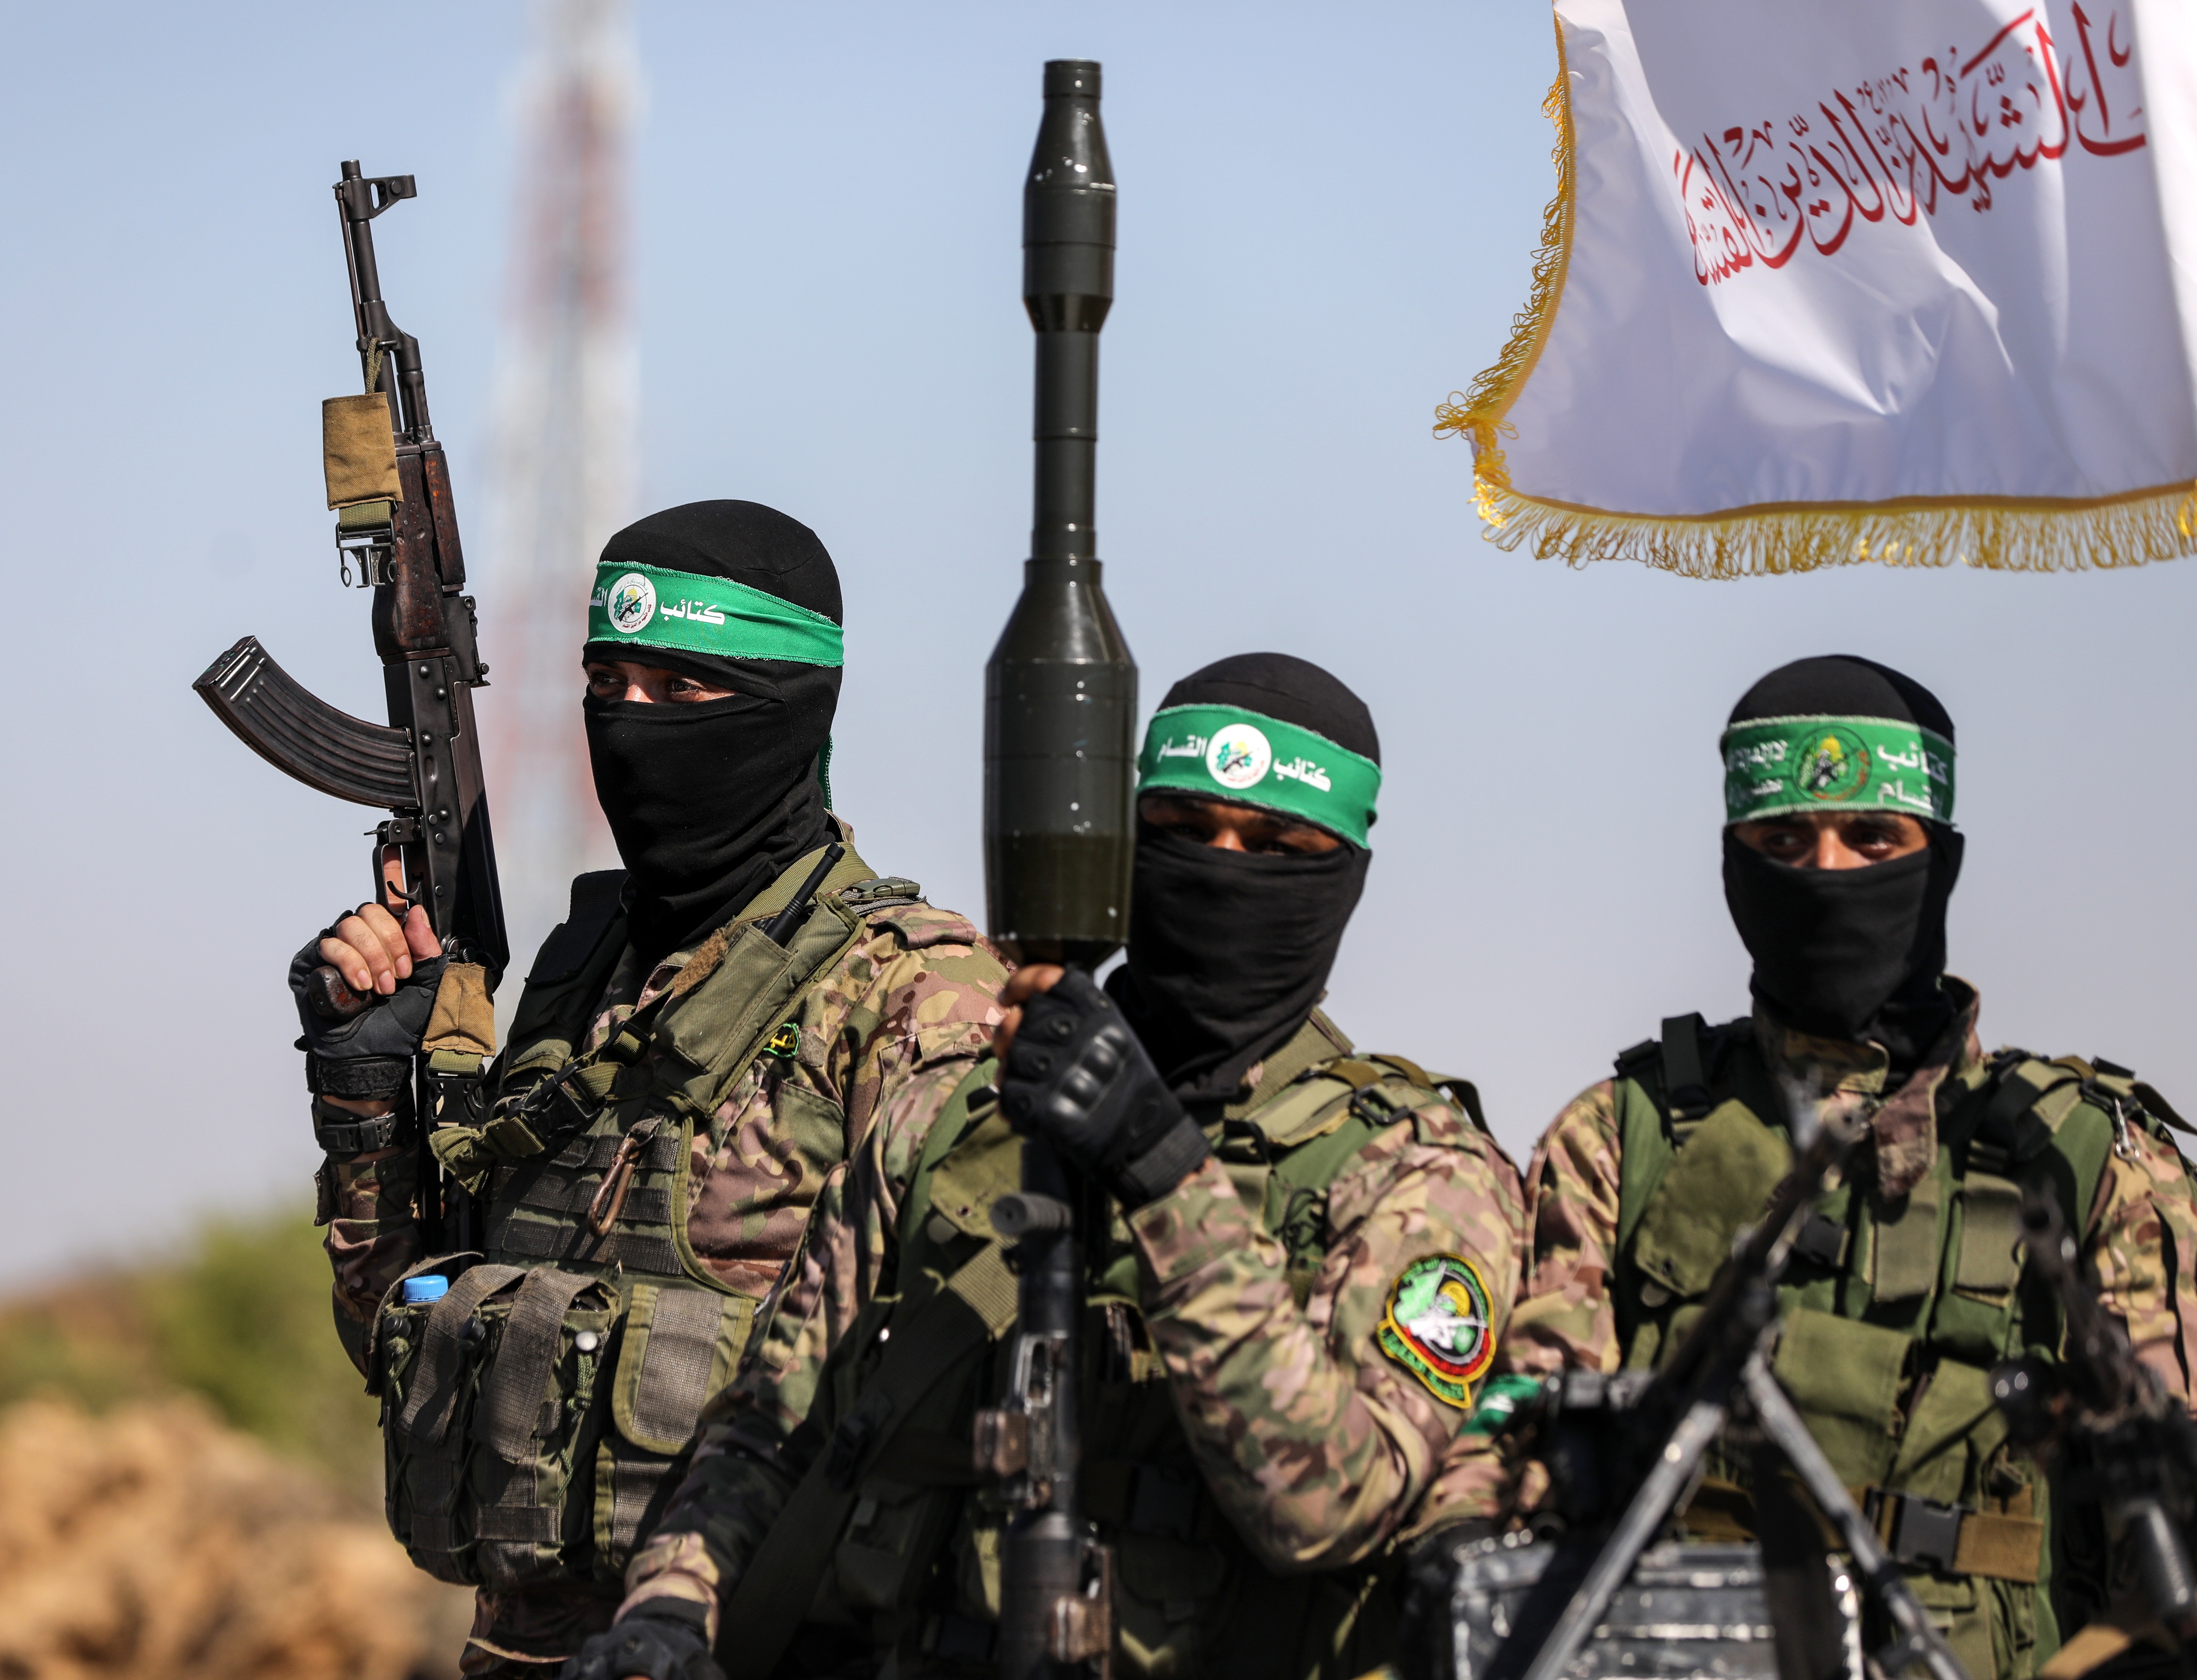 In einem niederländischen Bericht wurde darauf hingewiesen, dass der Krieg in Gaza nach dem Angriff der Hamas auf Israel im vergangenen Jahr zu einer Zunahme terroristischer Probleme geführt habe